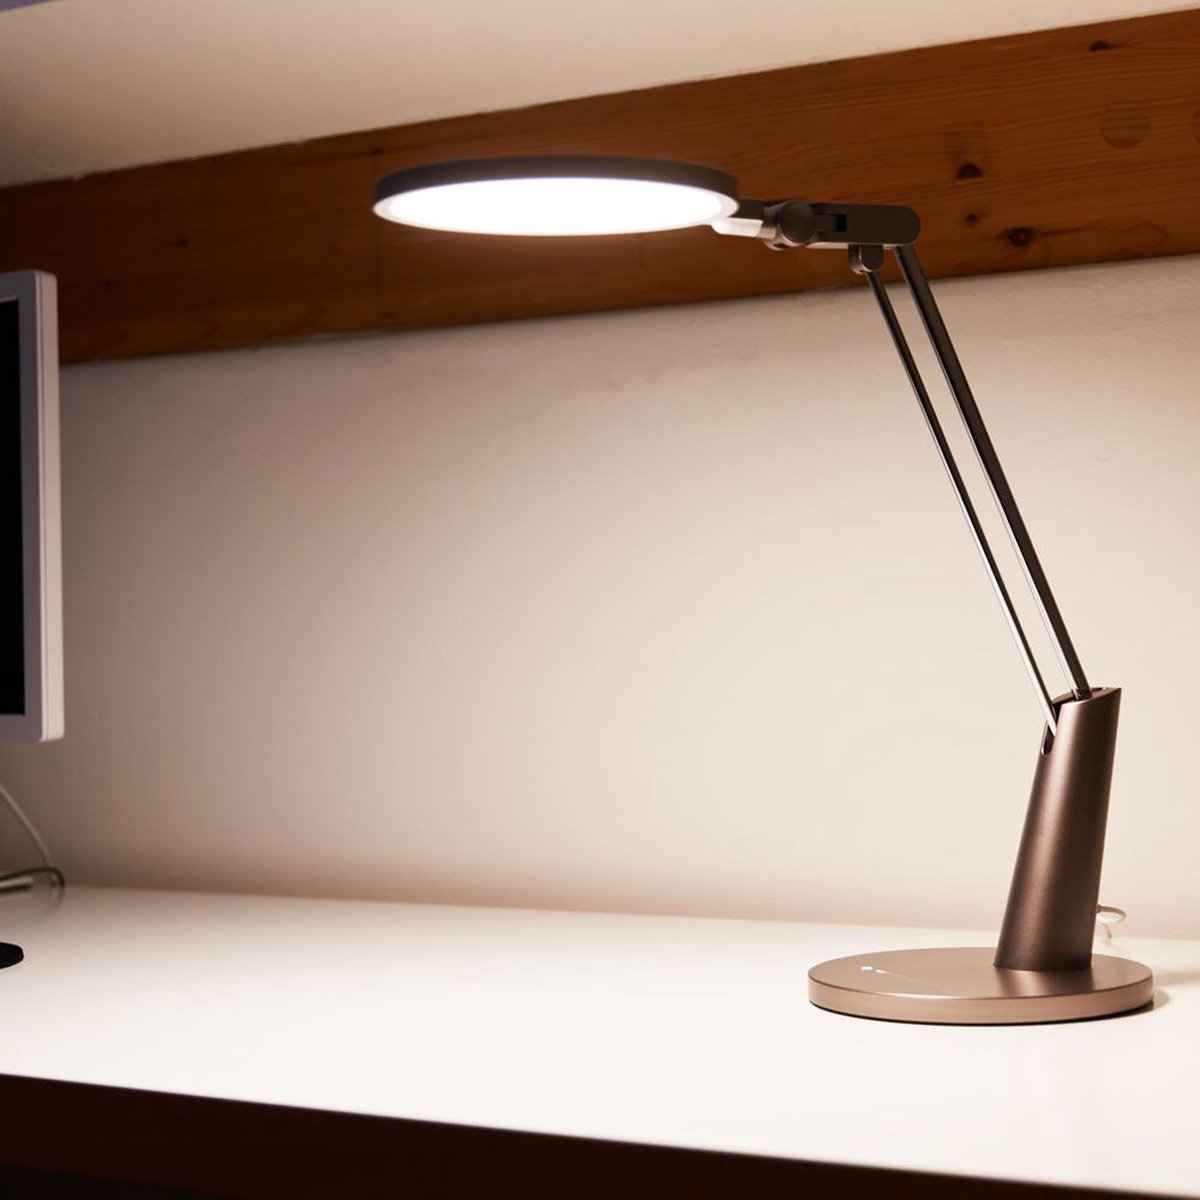 Yeelight slimme tafellamp - 14W - Helder wit licht - Slimme verlichting